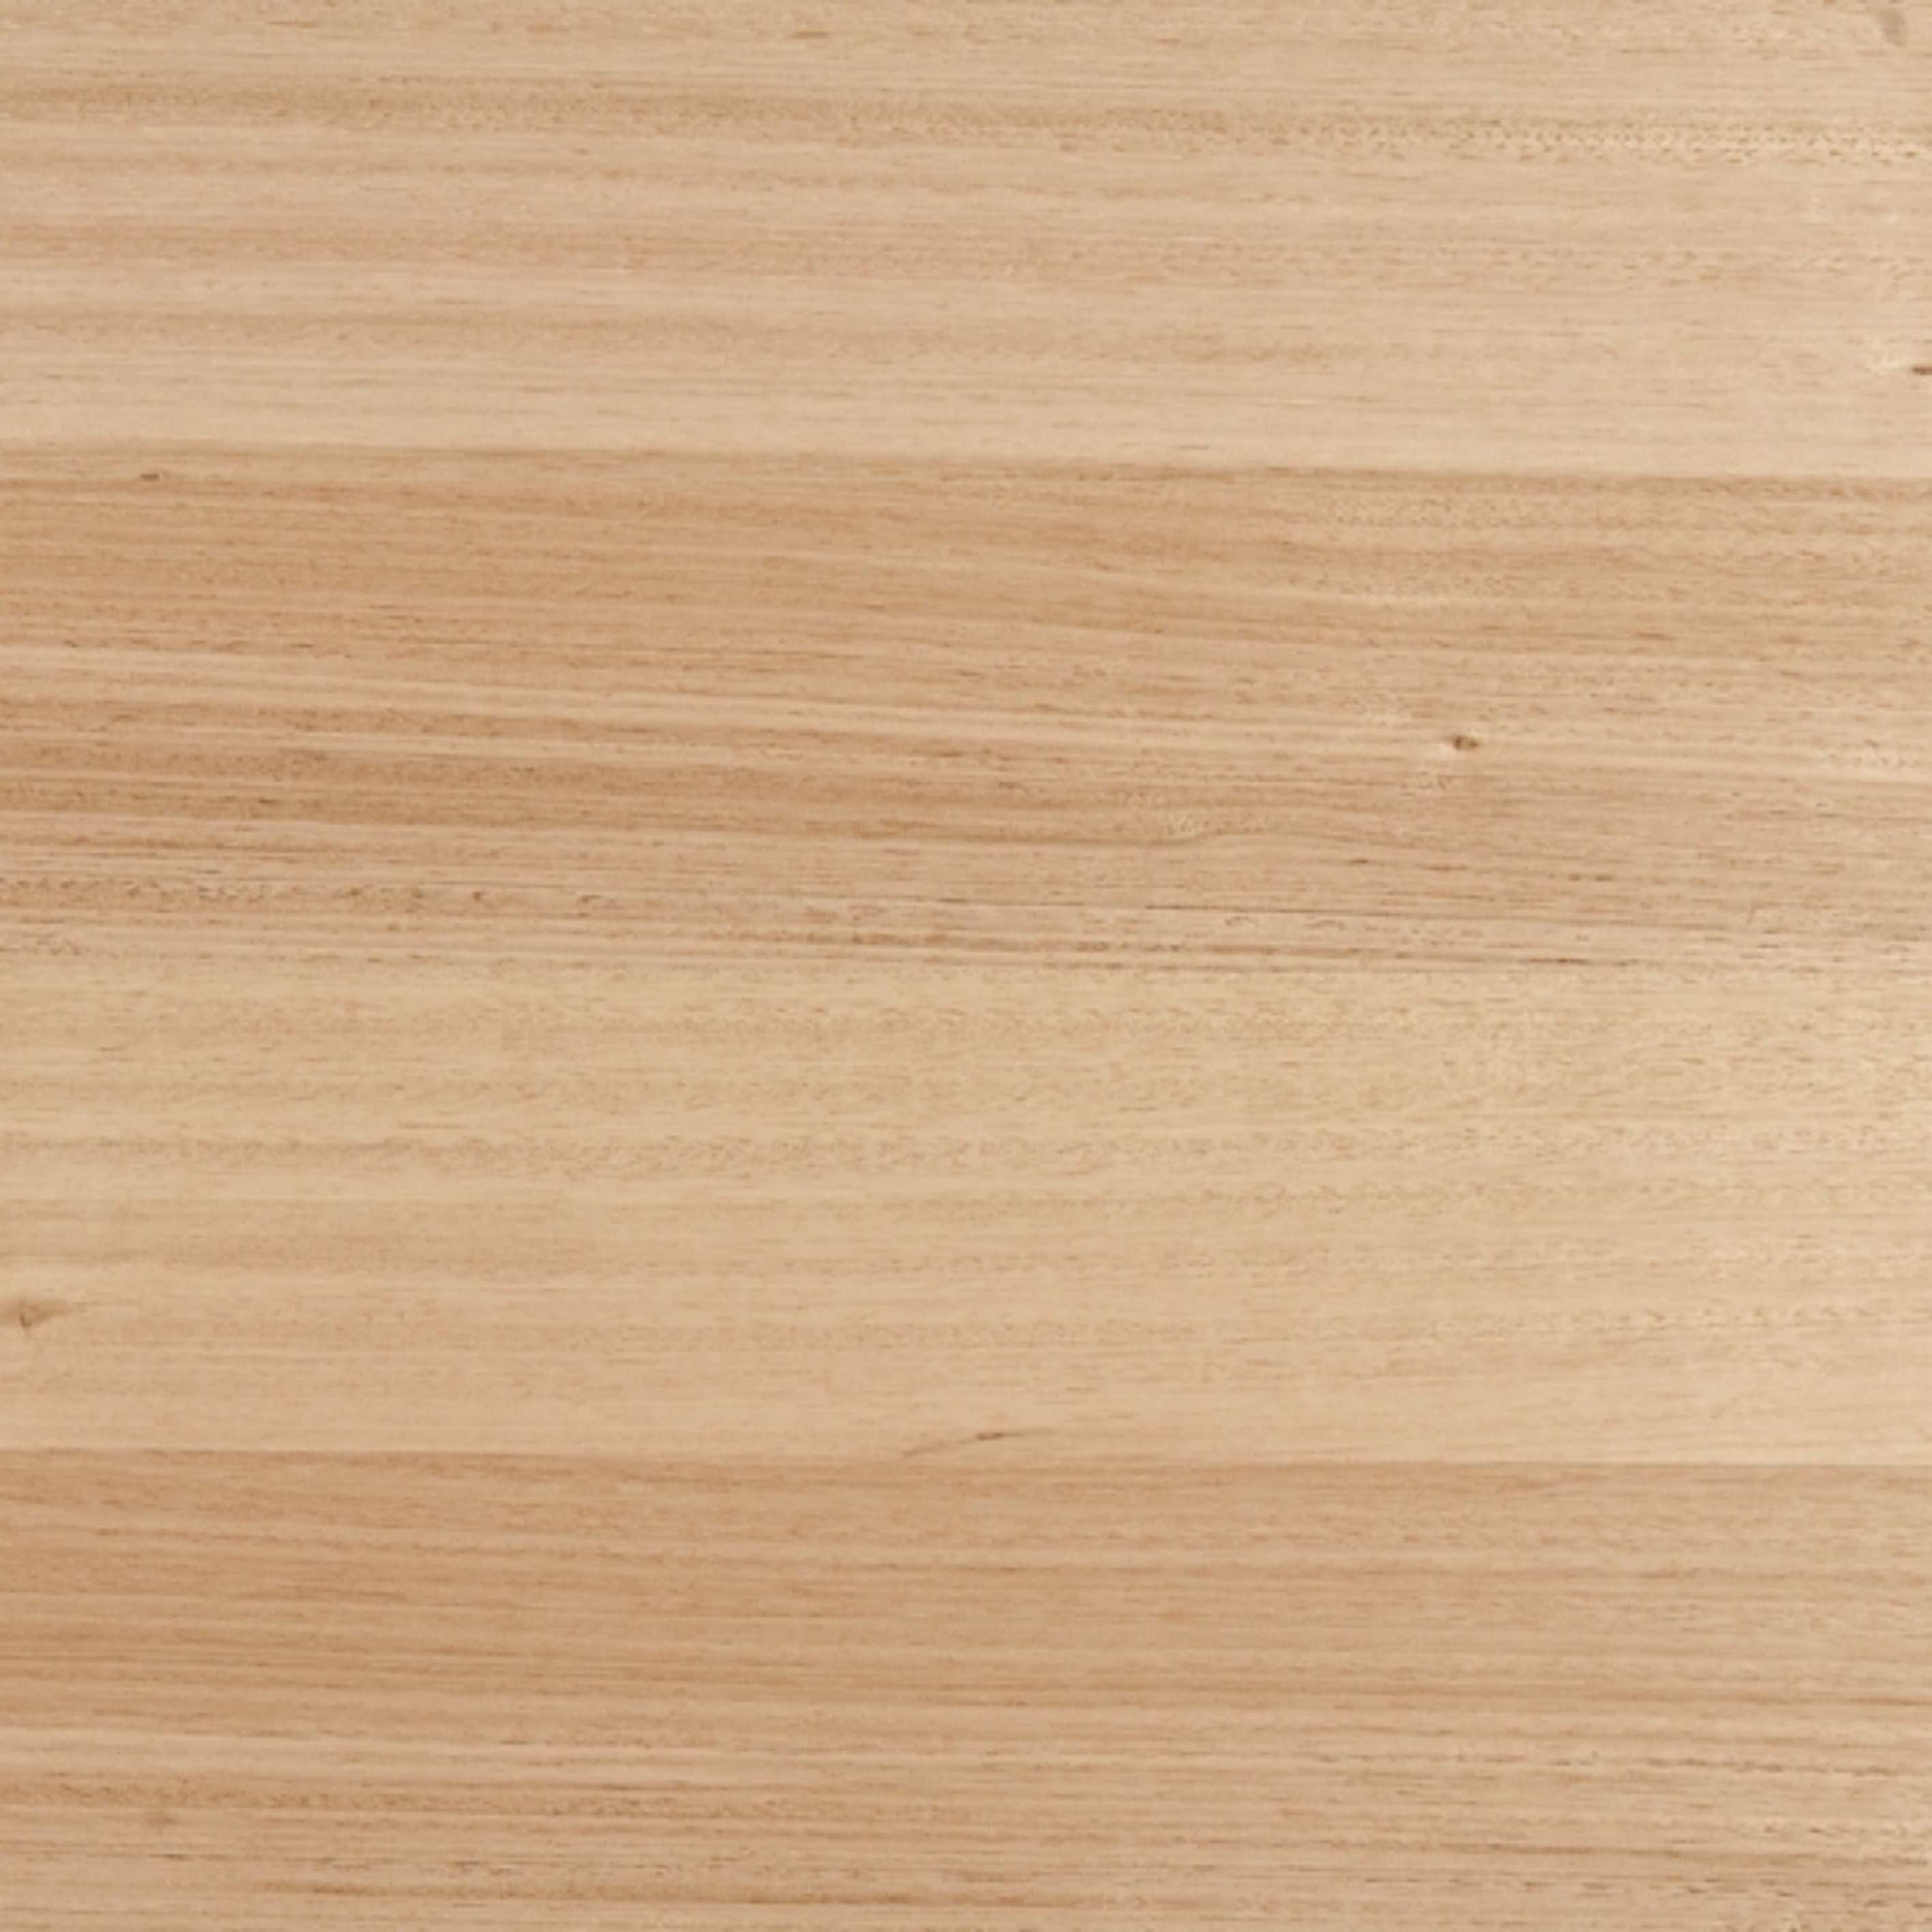 Engineered hardwood flooring 5G click Tas oak